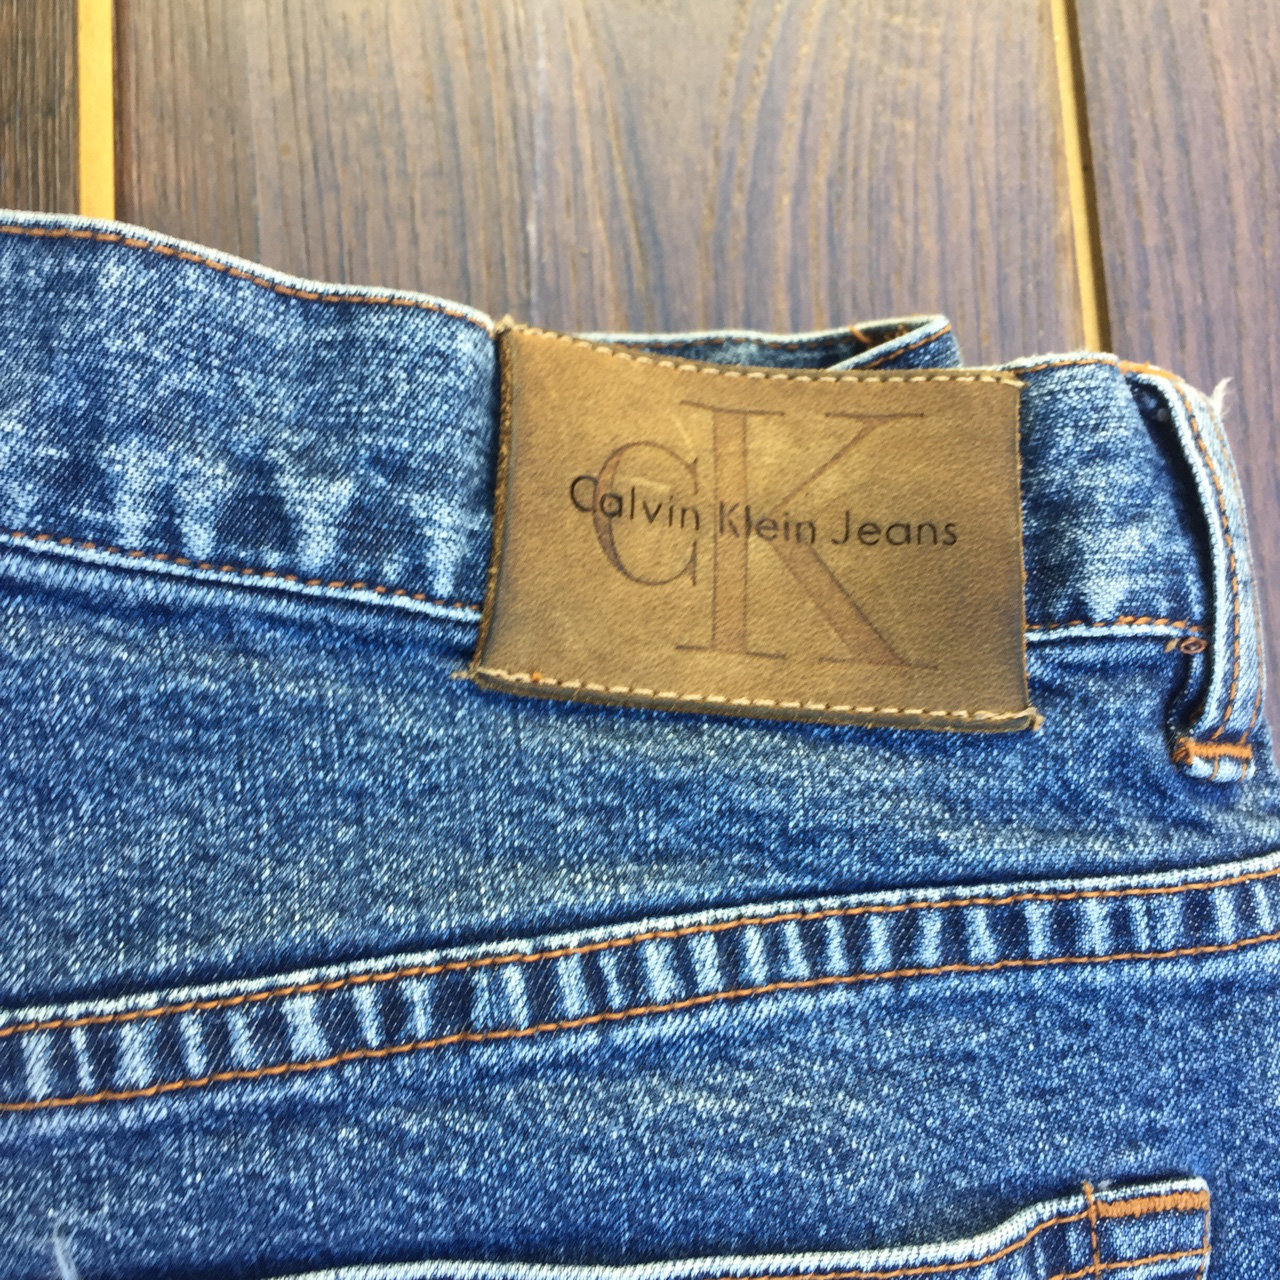 Quần jeans thì thân thuộc rồi nhưng hiếm ai biết chiếc túi mini phía trước và miếng da sau lưng có công dụng gì - Ảnh 4.